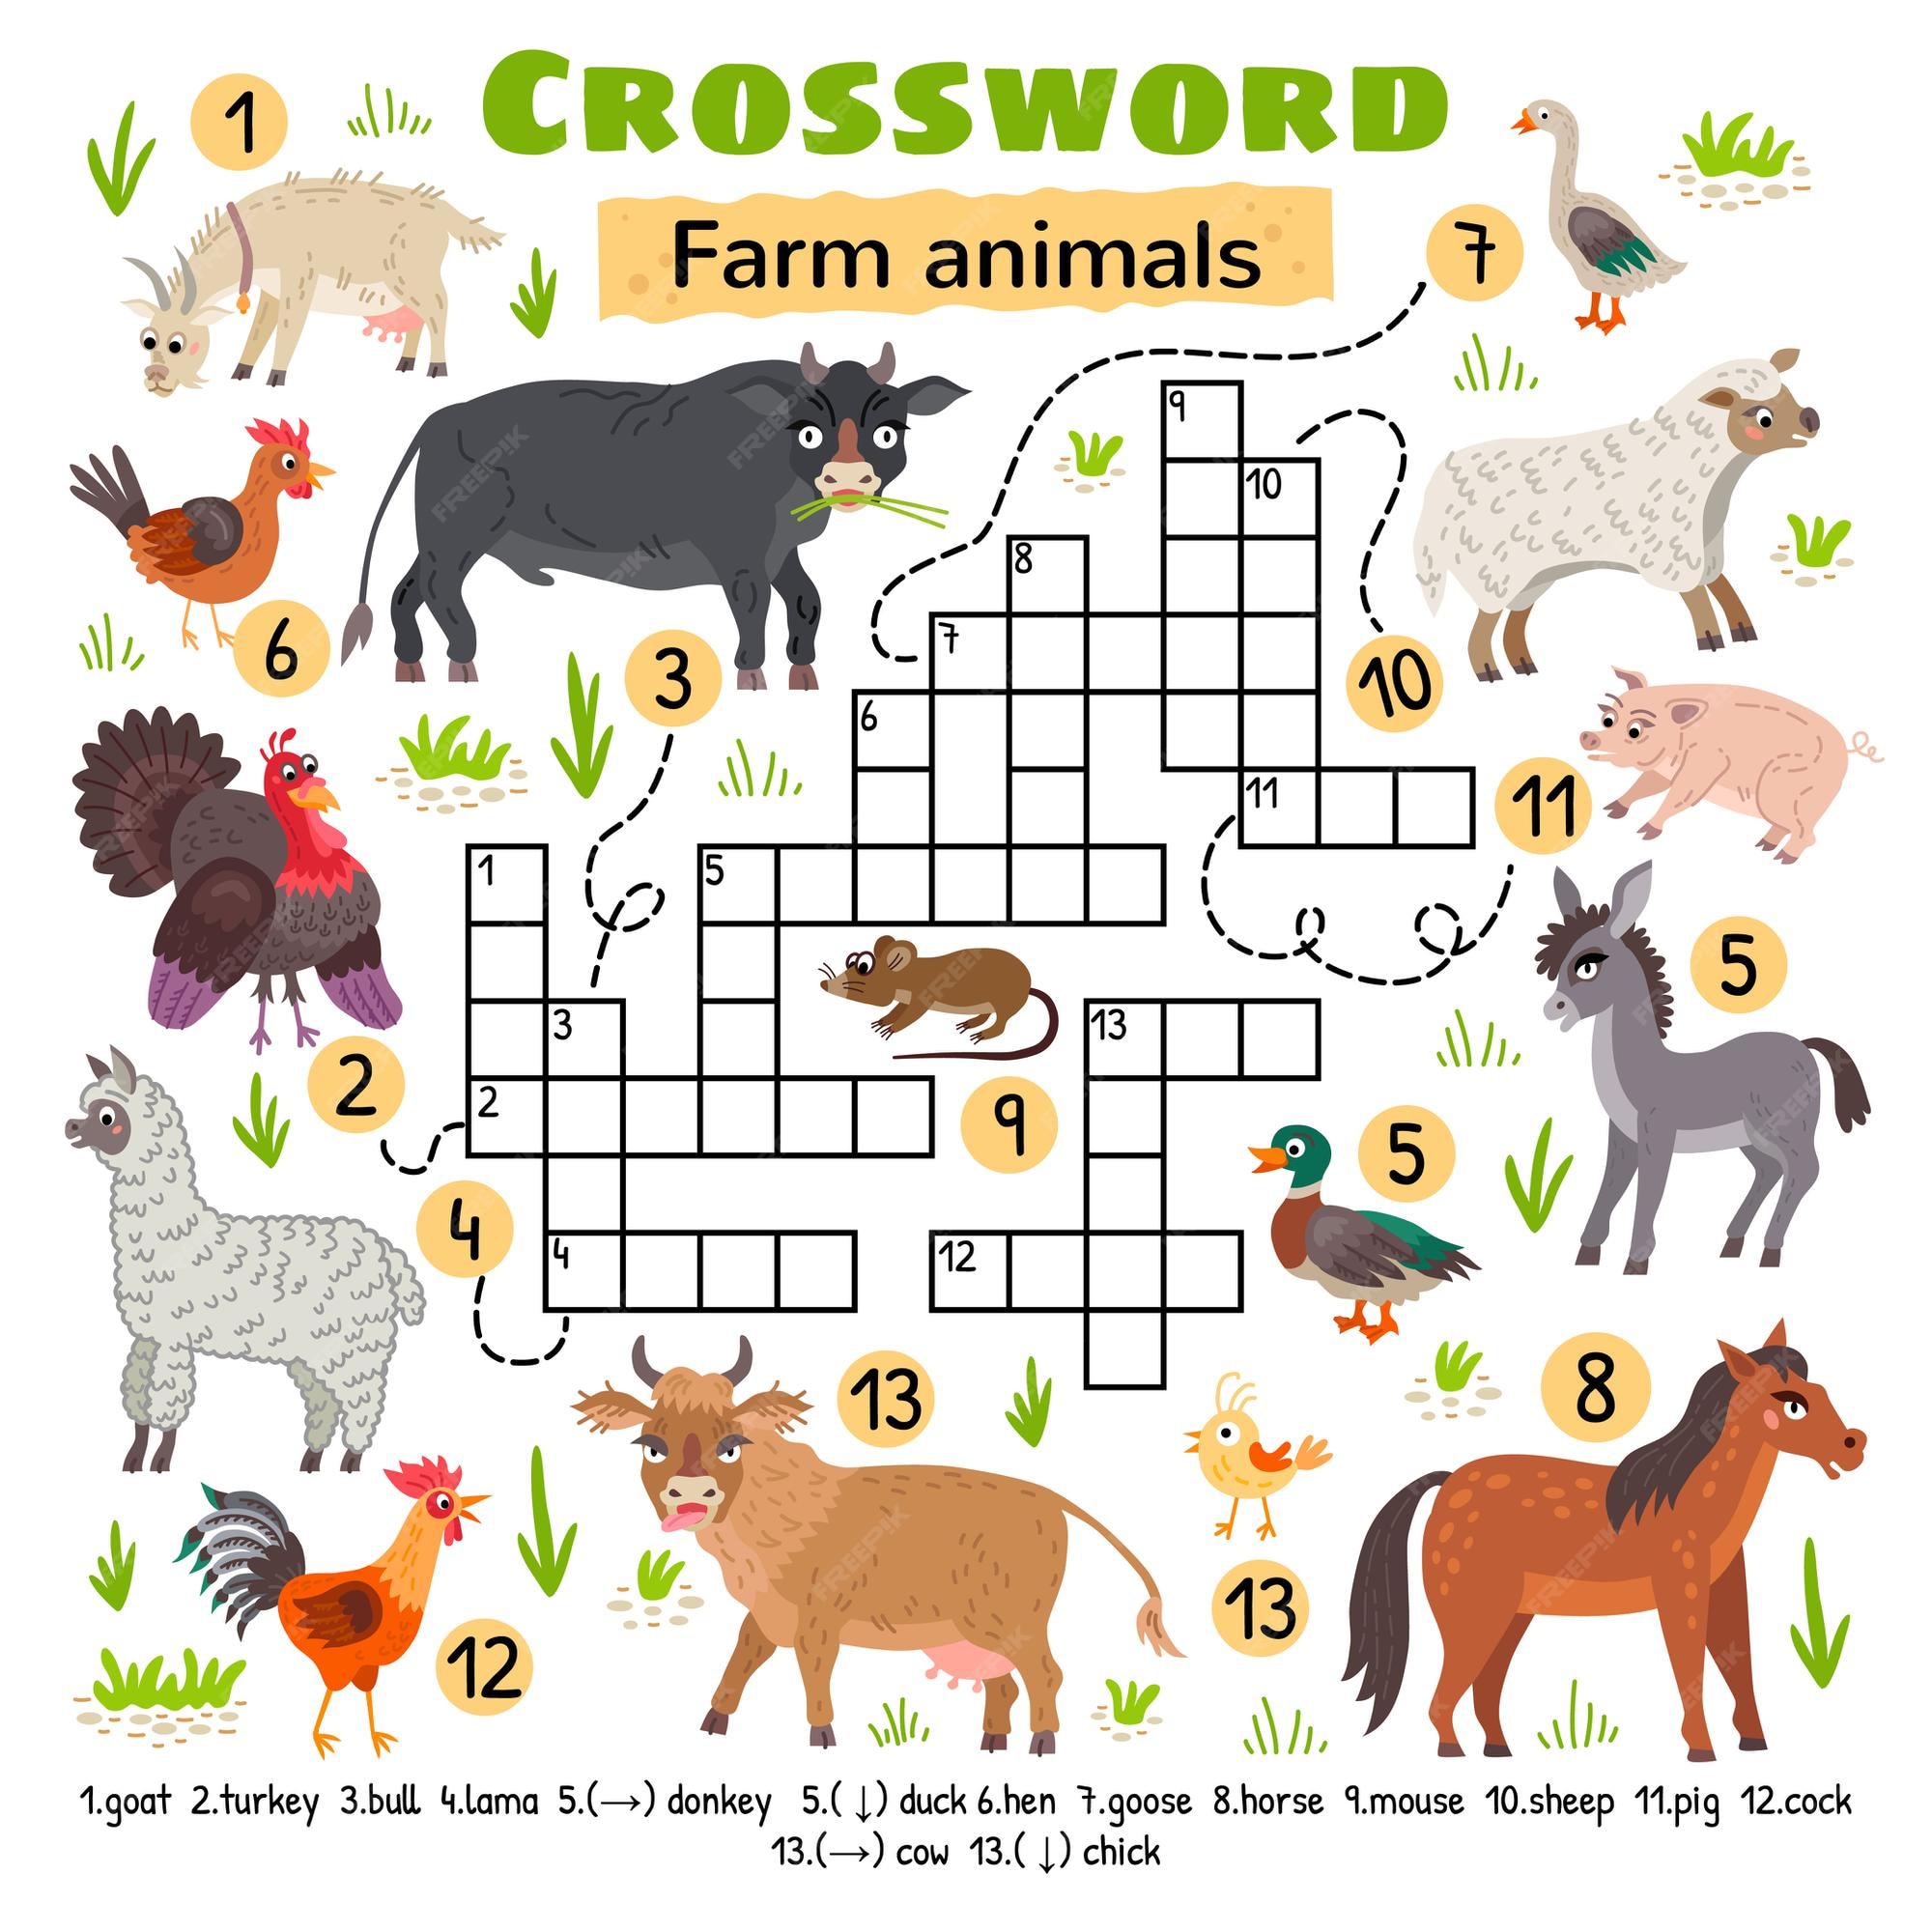 Premium Vector Farm animals crossword for preschool kids activity